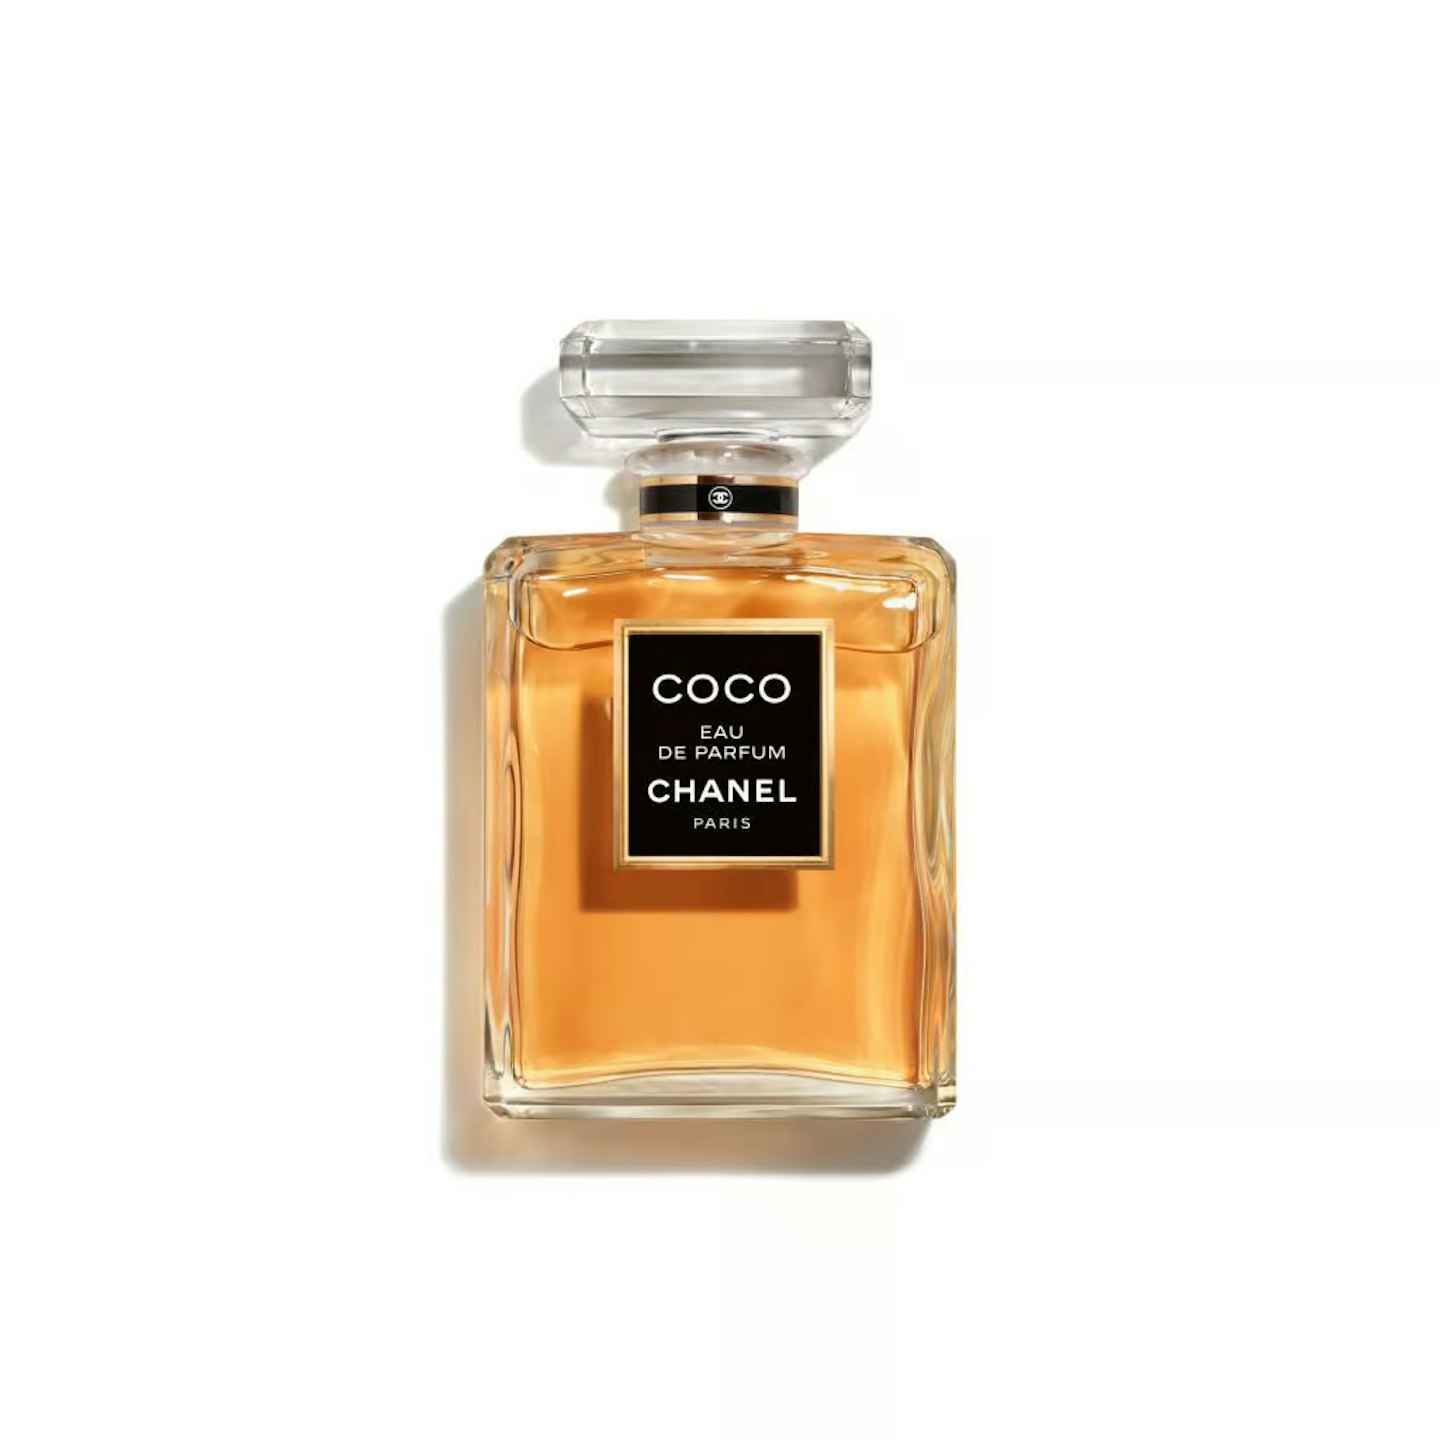 CHANEL Coco Noir Parfum Bottle, 15ml at John Lewis & Partners